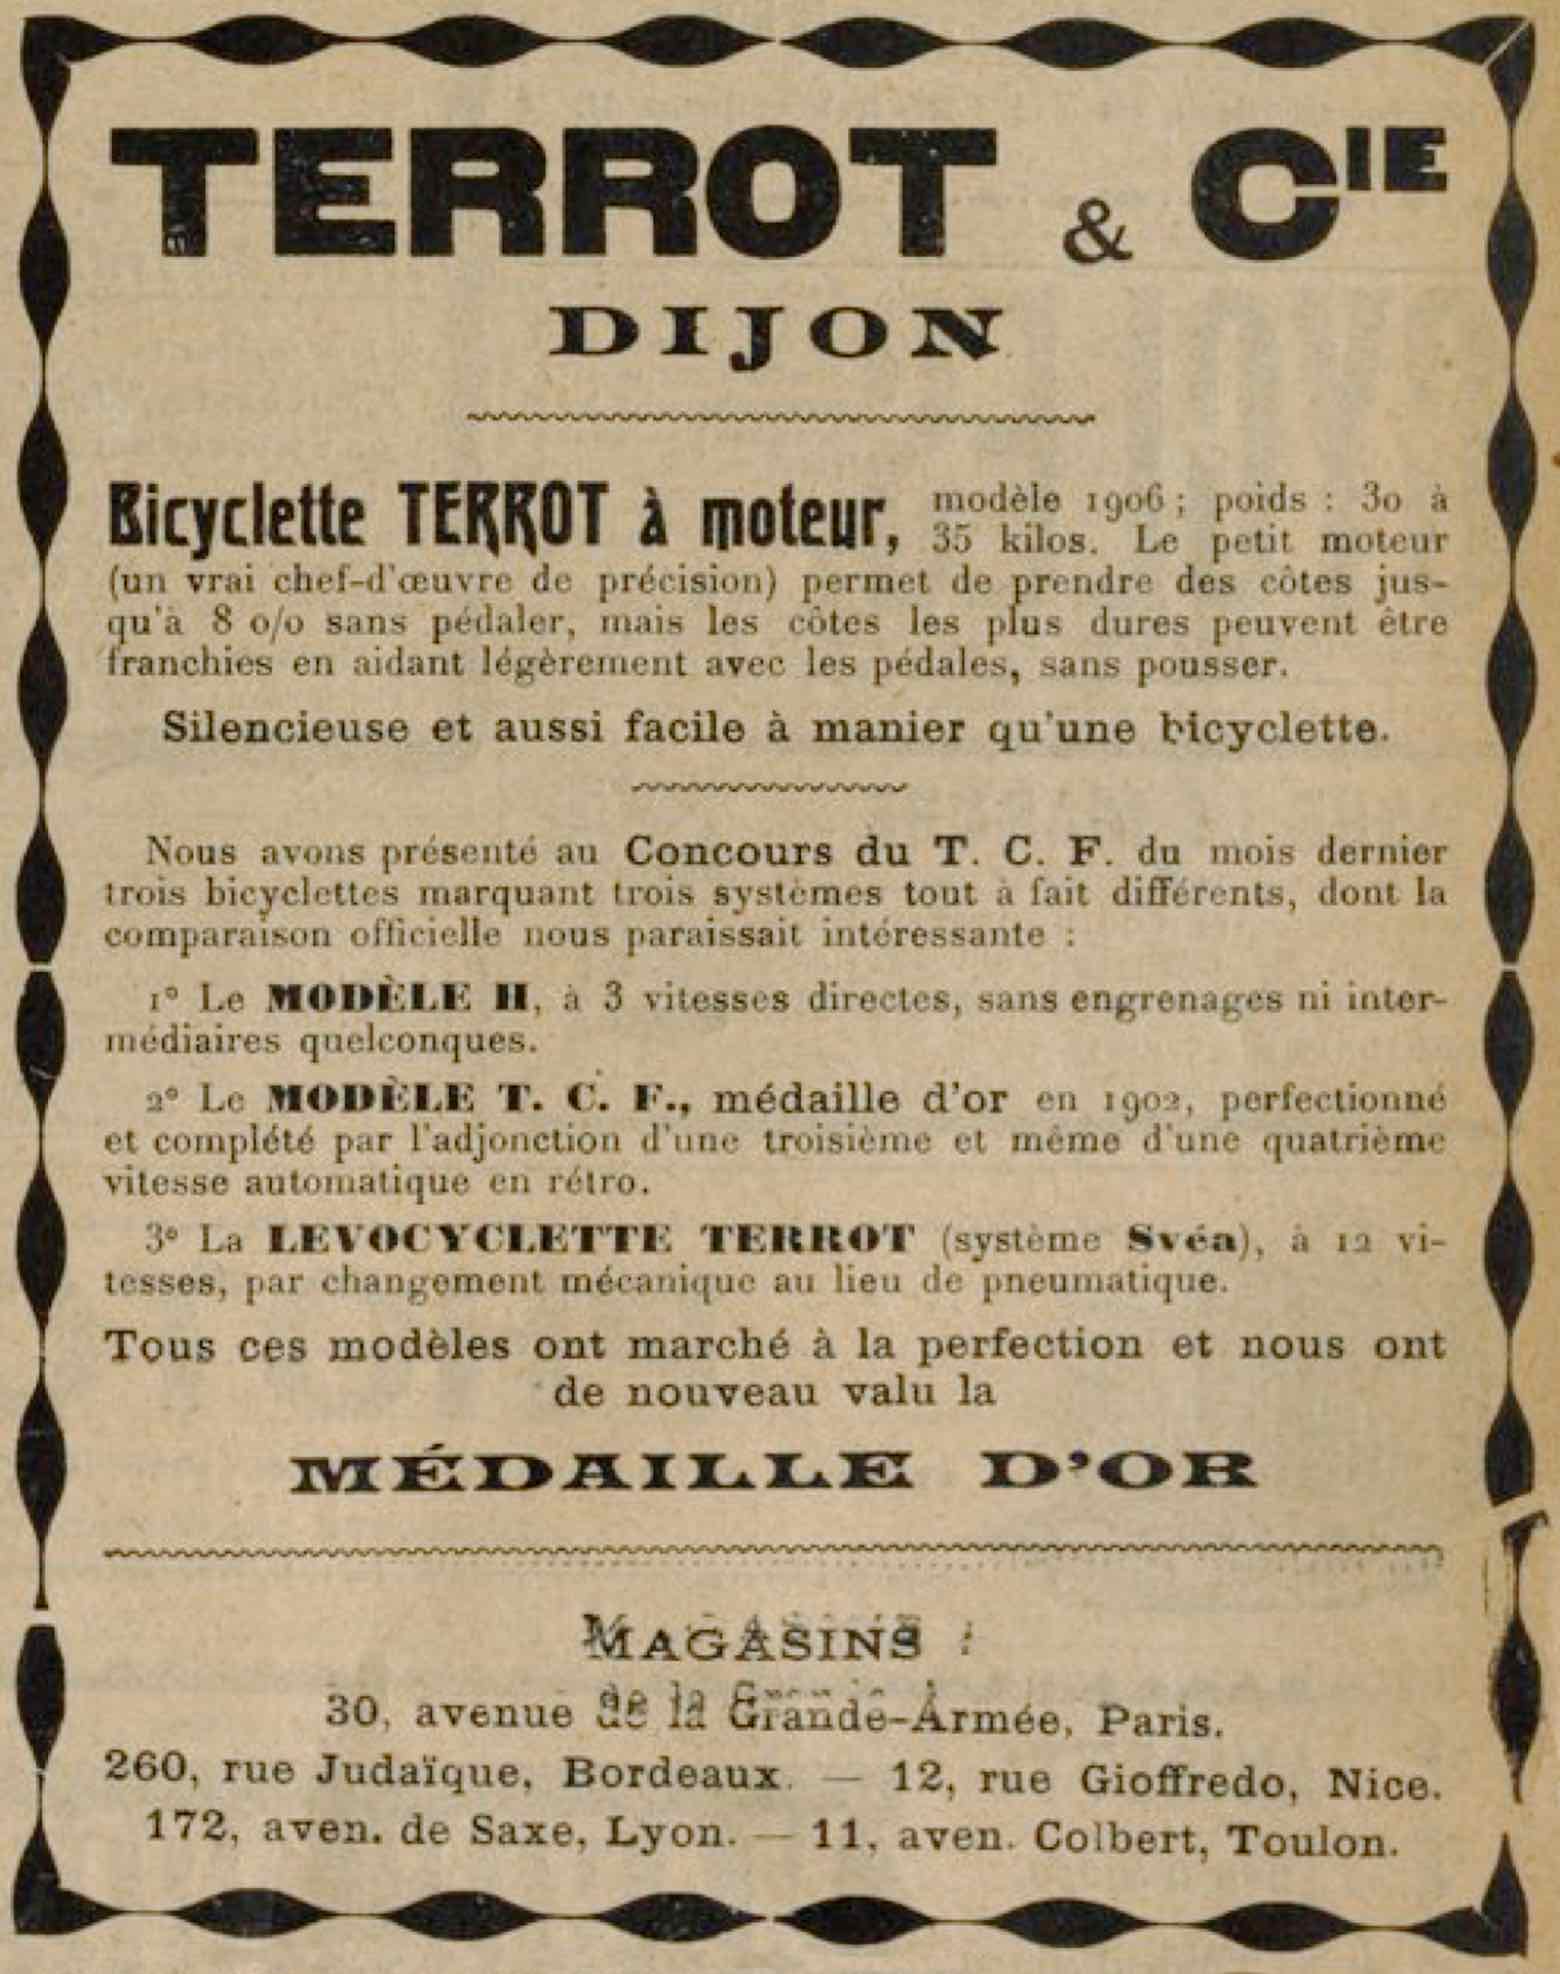 T.C.F. Revue Mensuelle September 1905 - Terrot advert main image